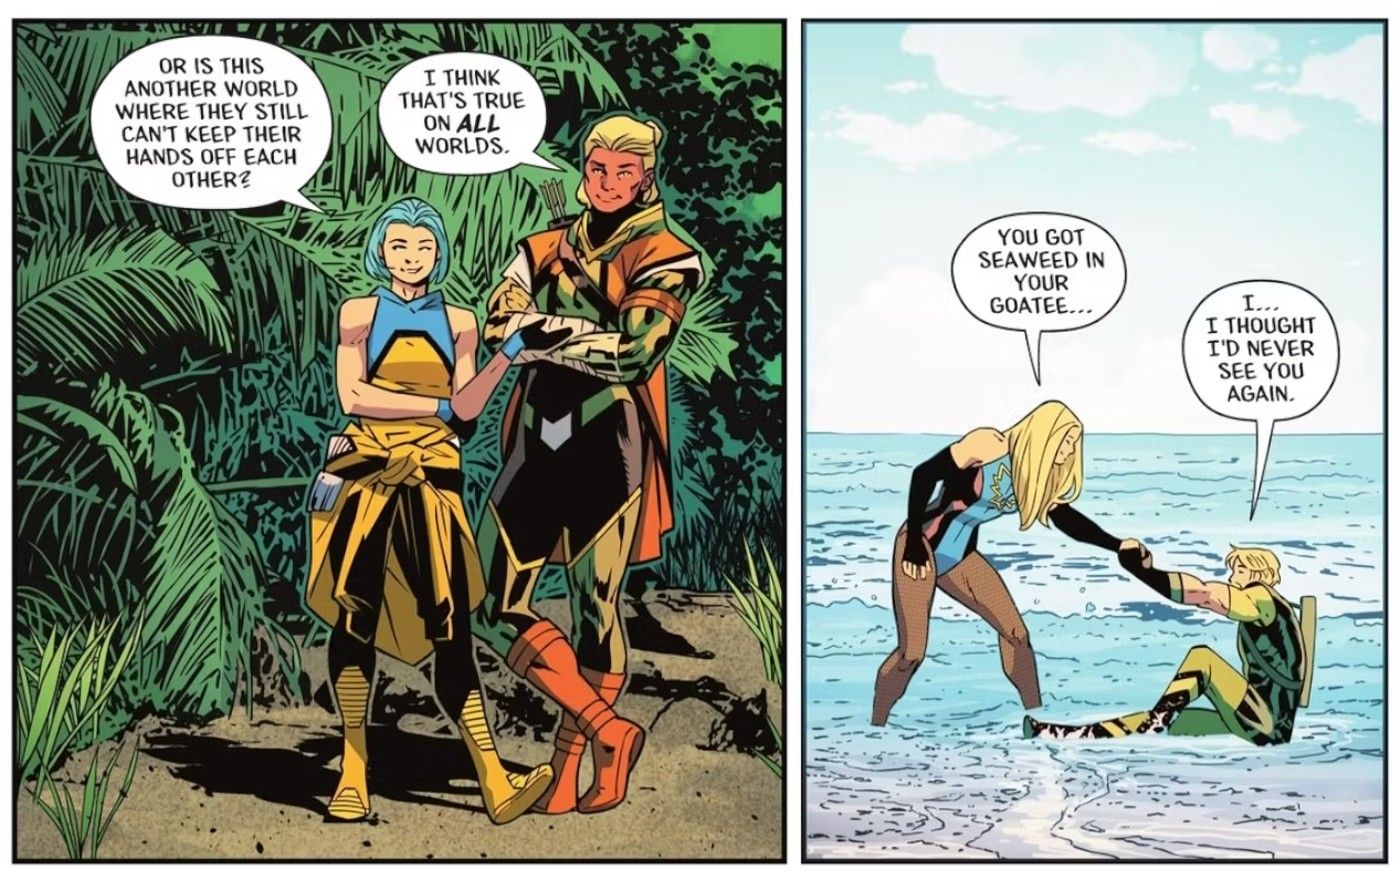 Paneles de cómics: superhéroes disfrazados están juntos en una playa.